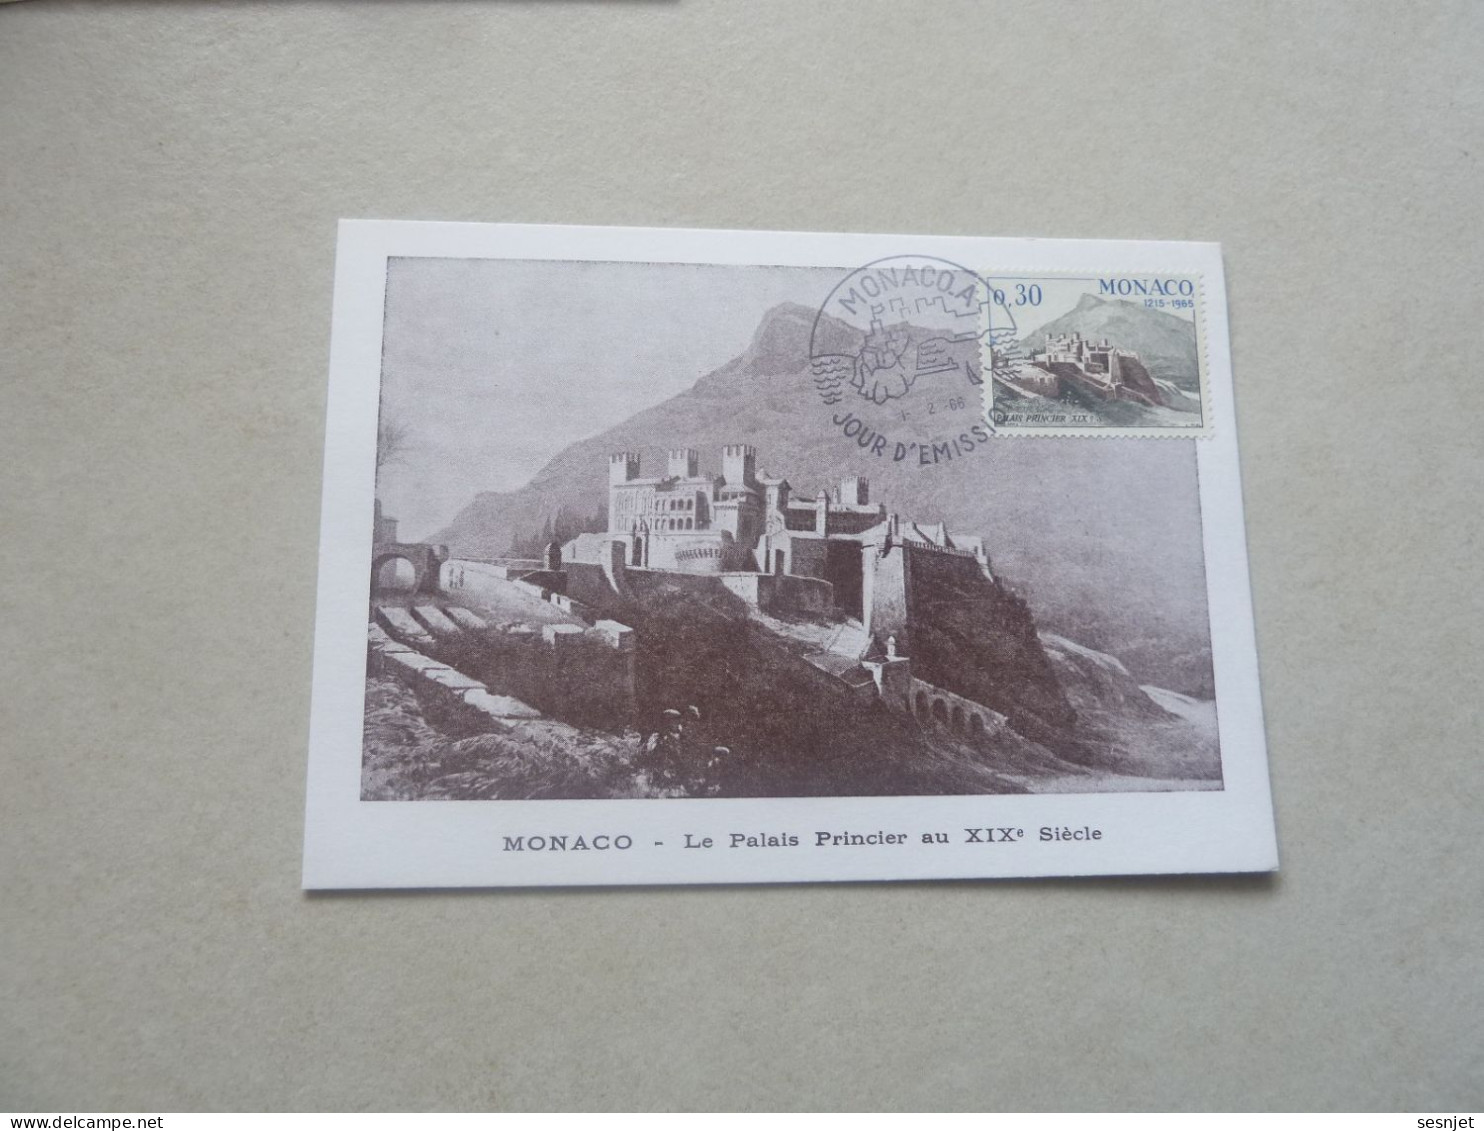 Monaco - Le Palais Au 19ème Siècle - 30c. - Yt 680 - Carte Premier Jour D'Emission - Année 1966 - - Cartas Máxima